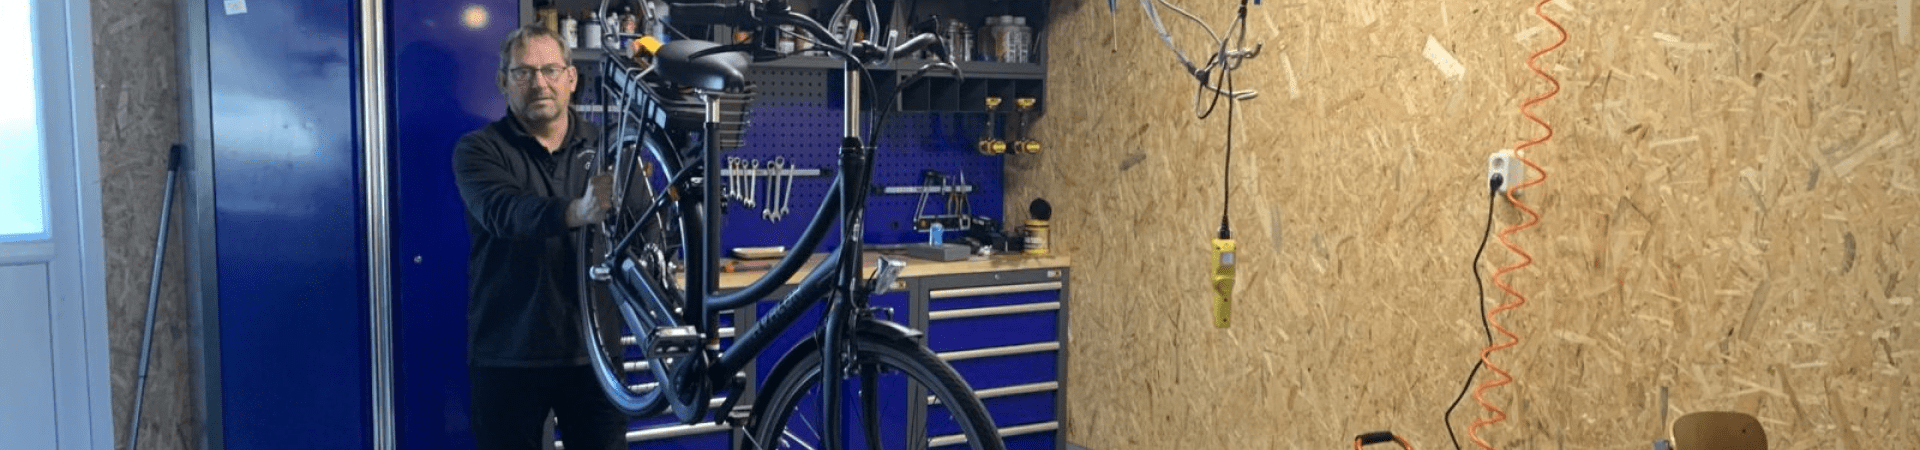 Fietsreparatie Wever voor al uw fiets reparatie